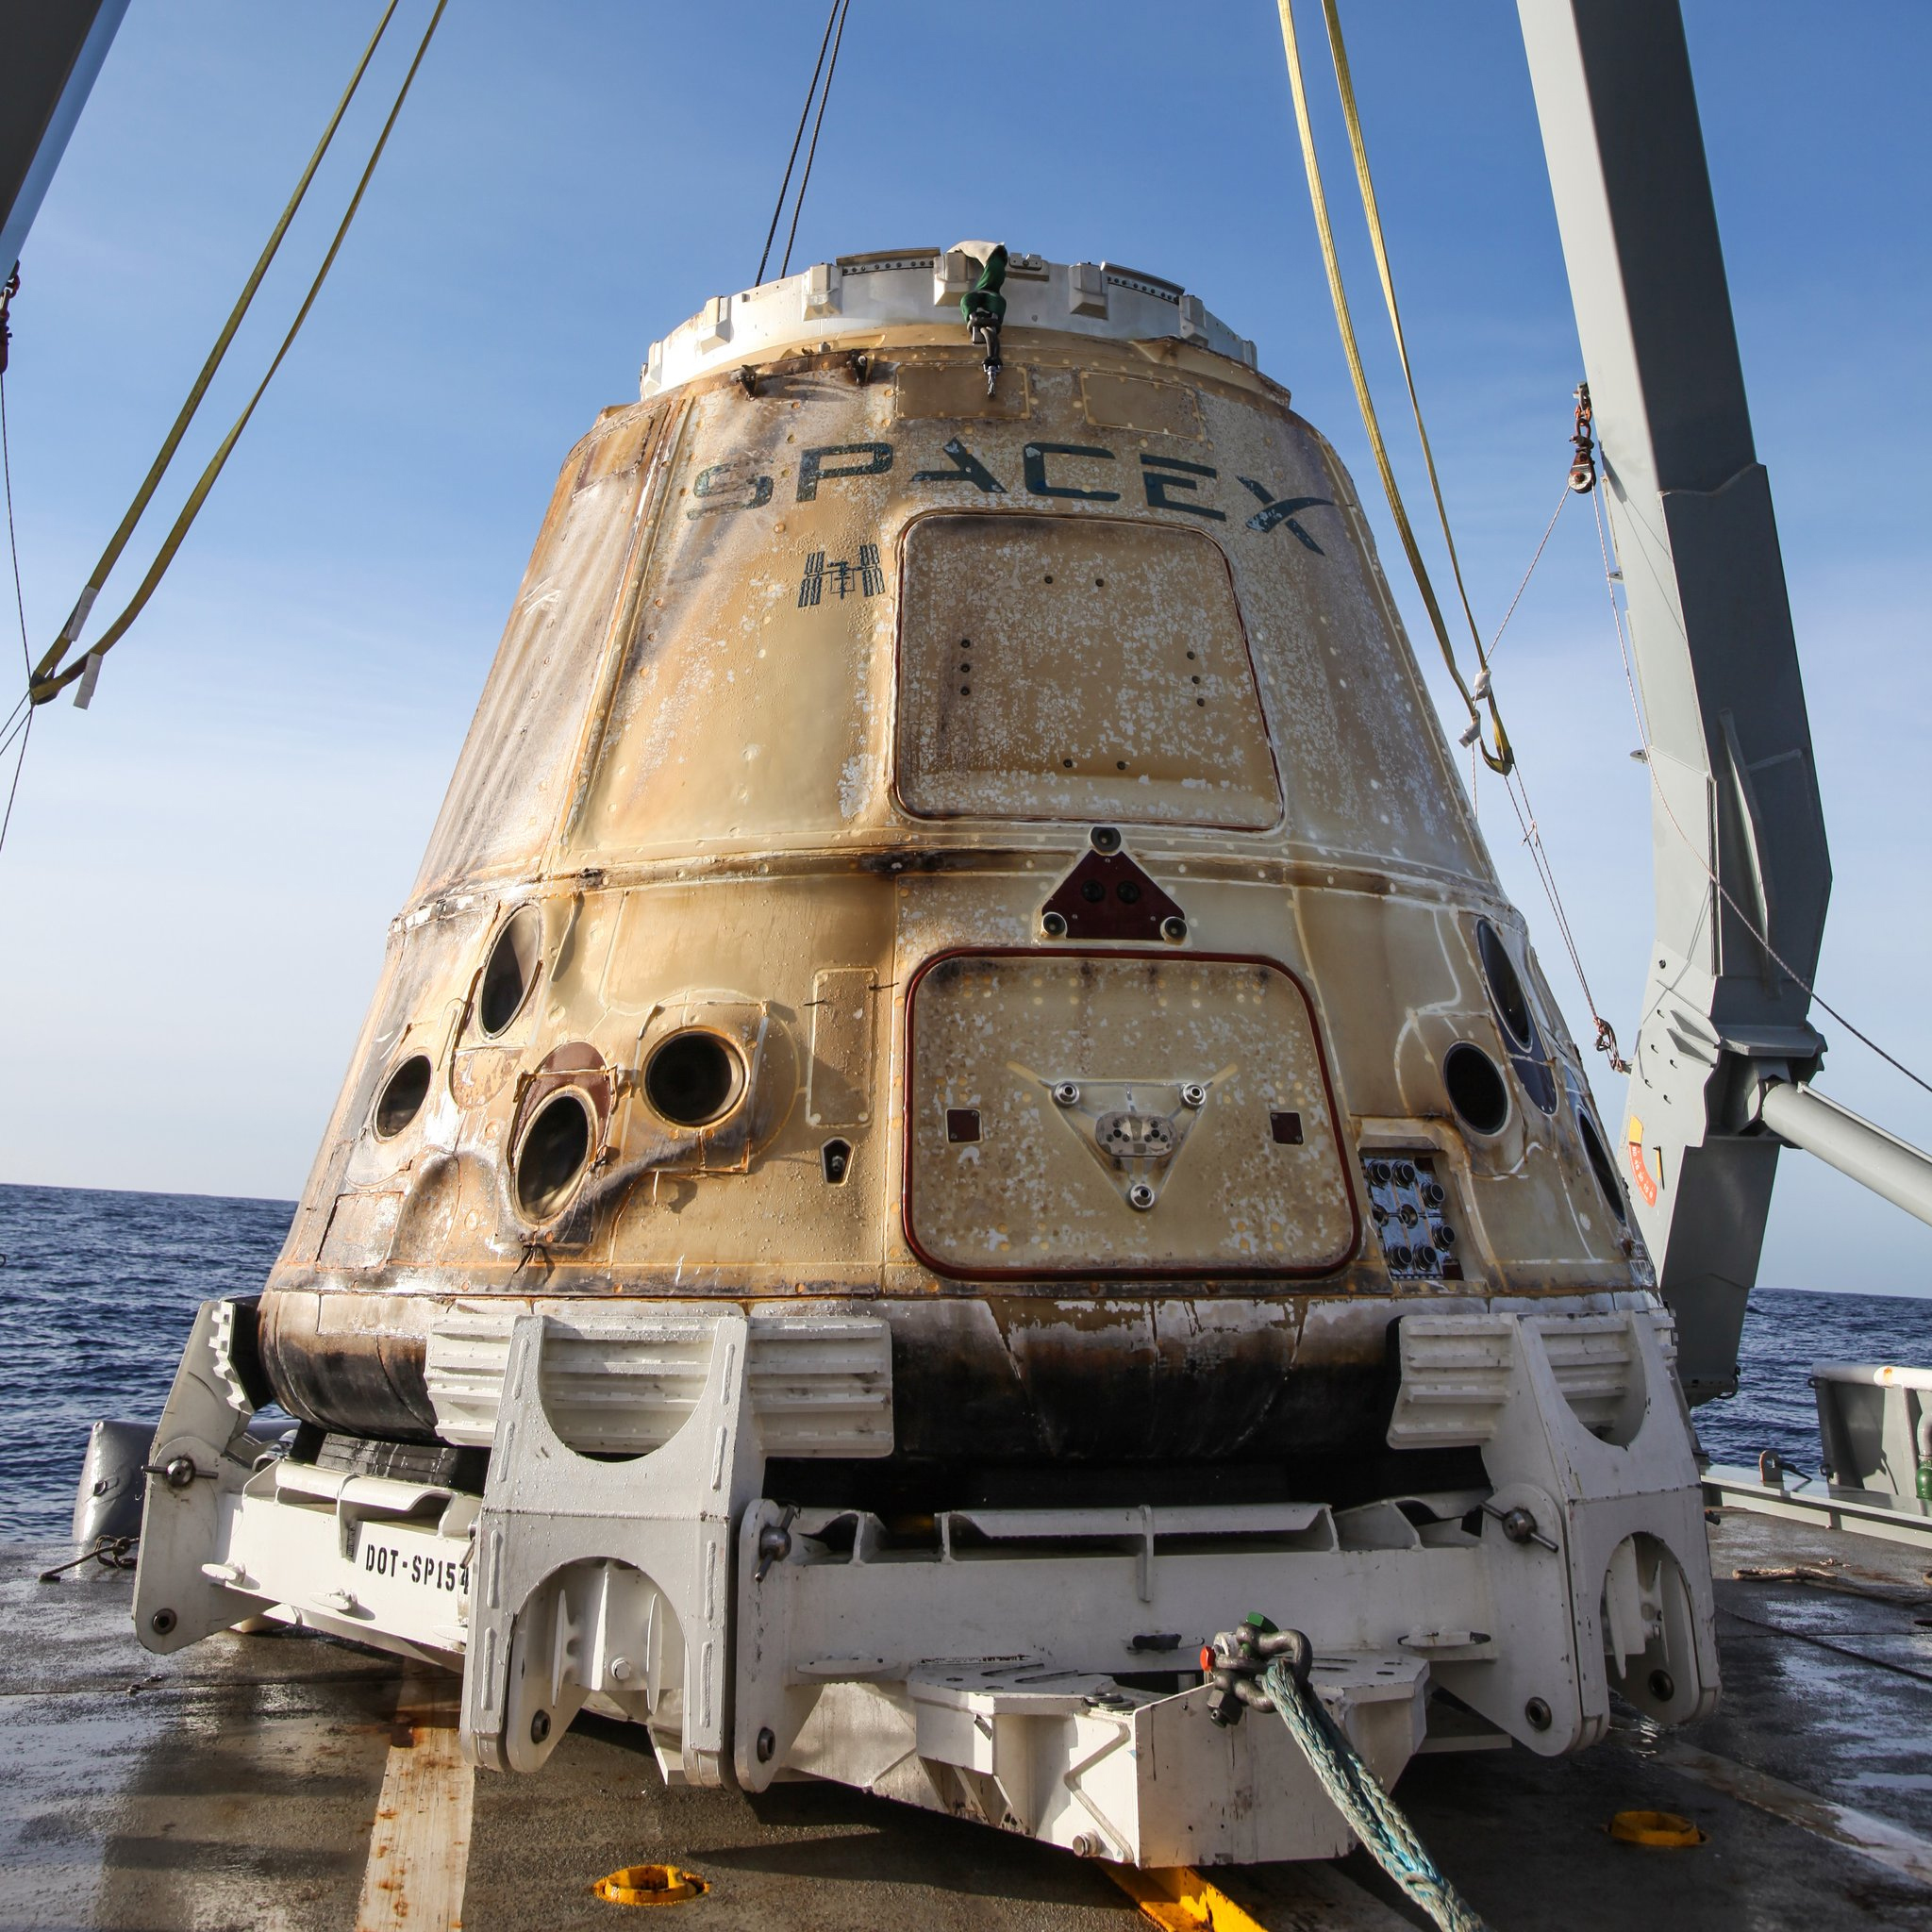 Dragon капсулата на SpaceX успешно се върна на земята с товар от МКС